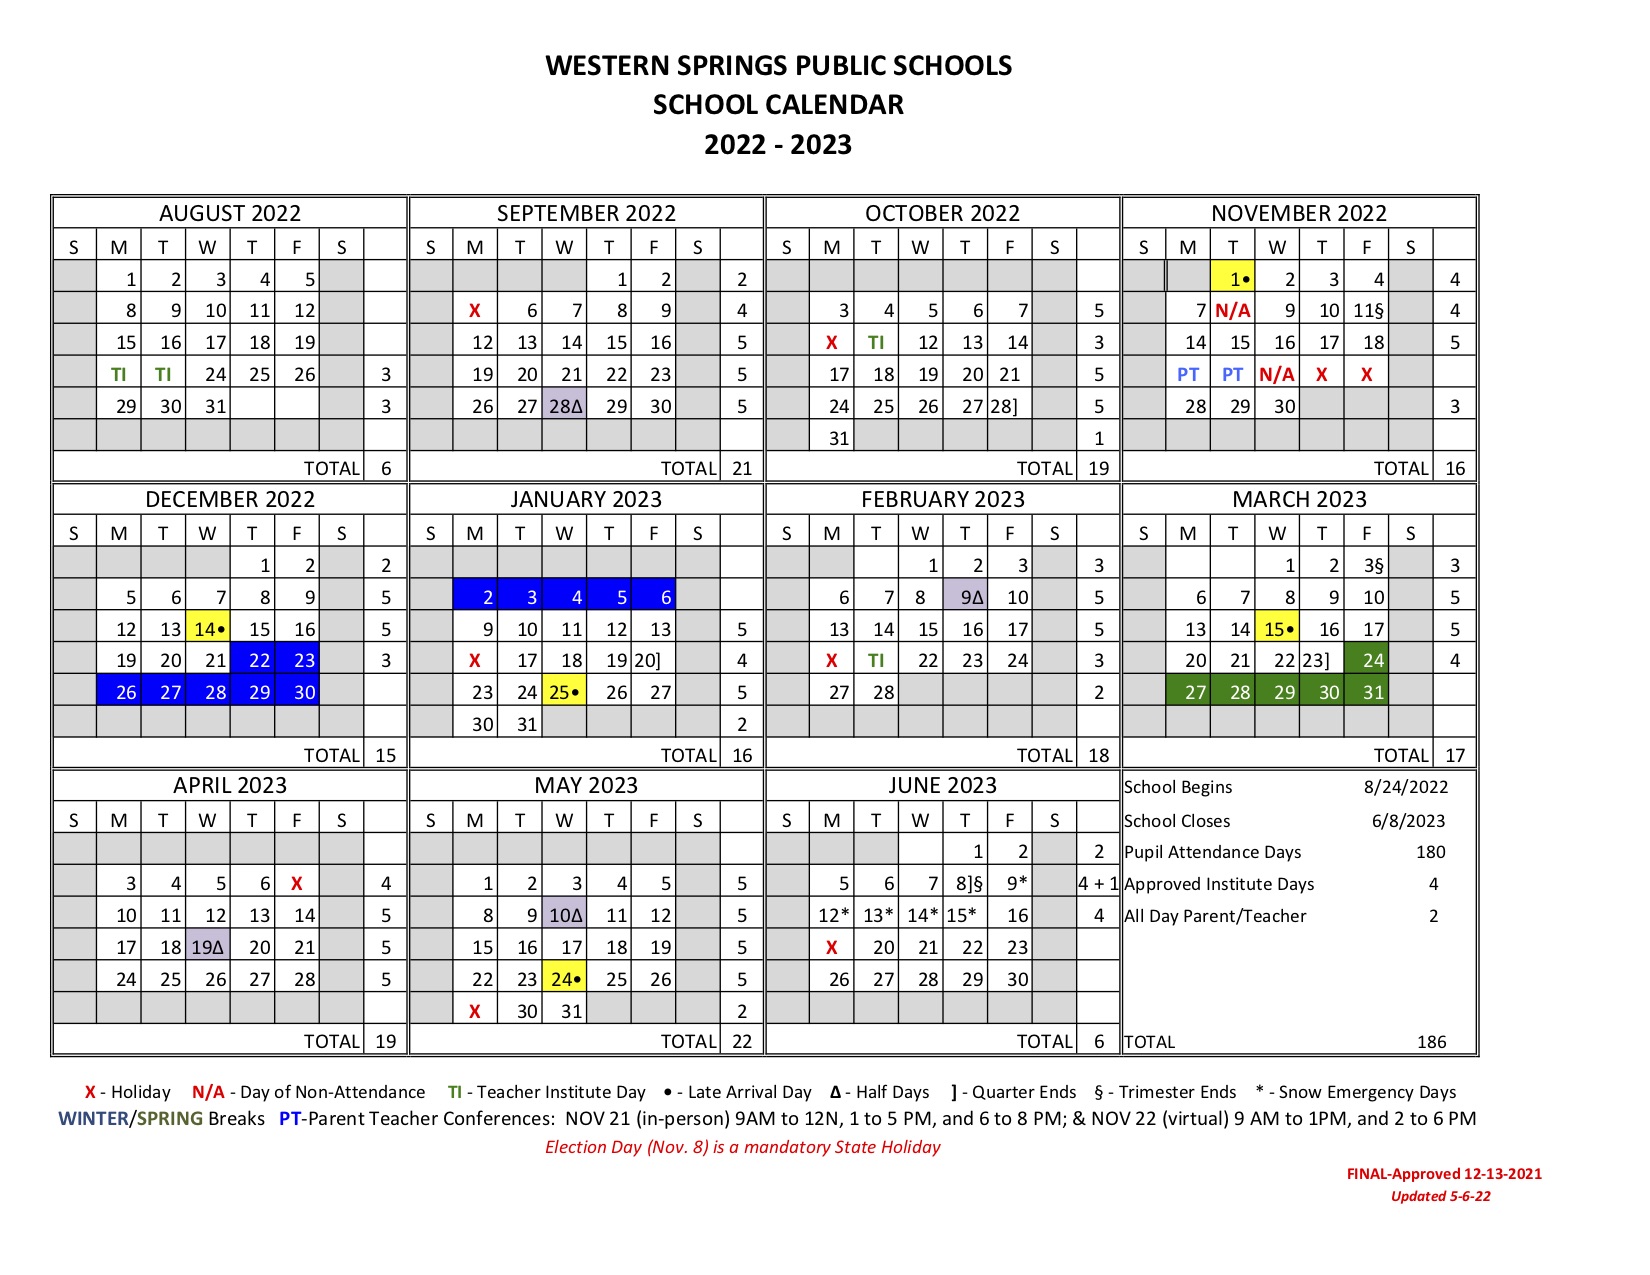 School Year 22 23 calendar